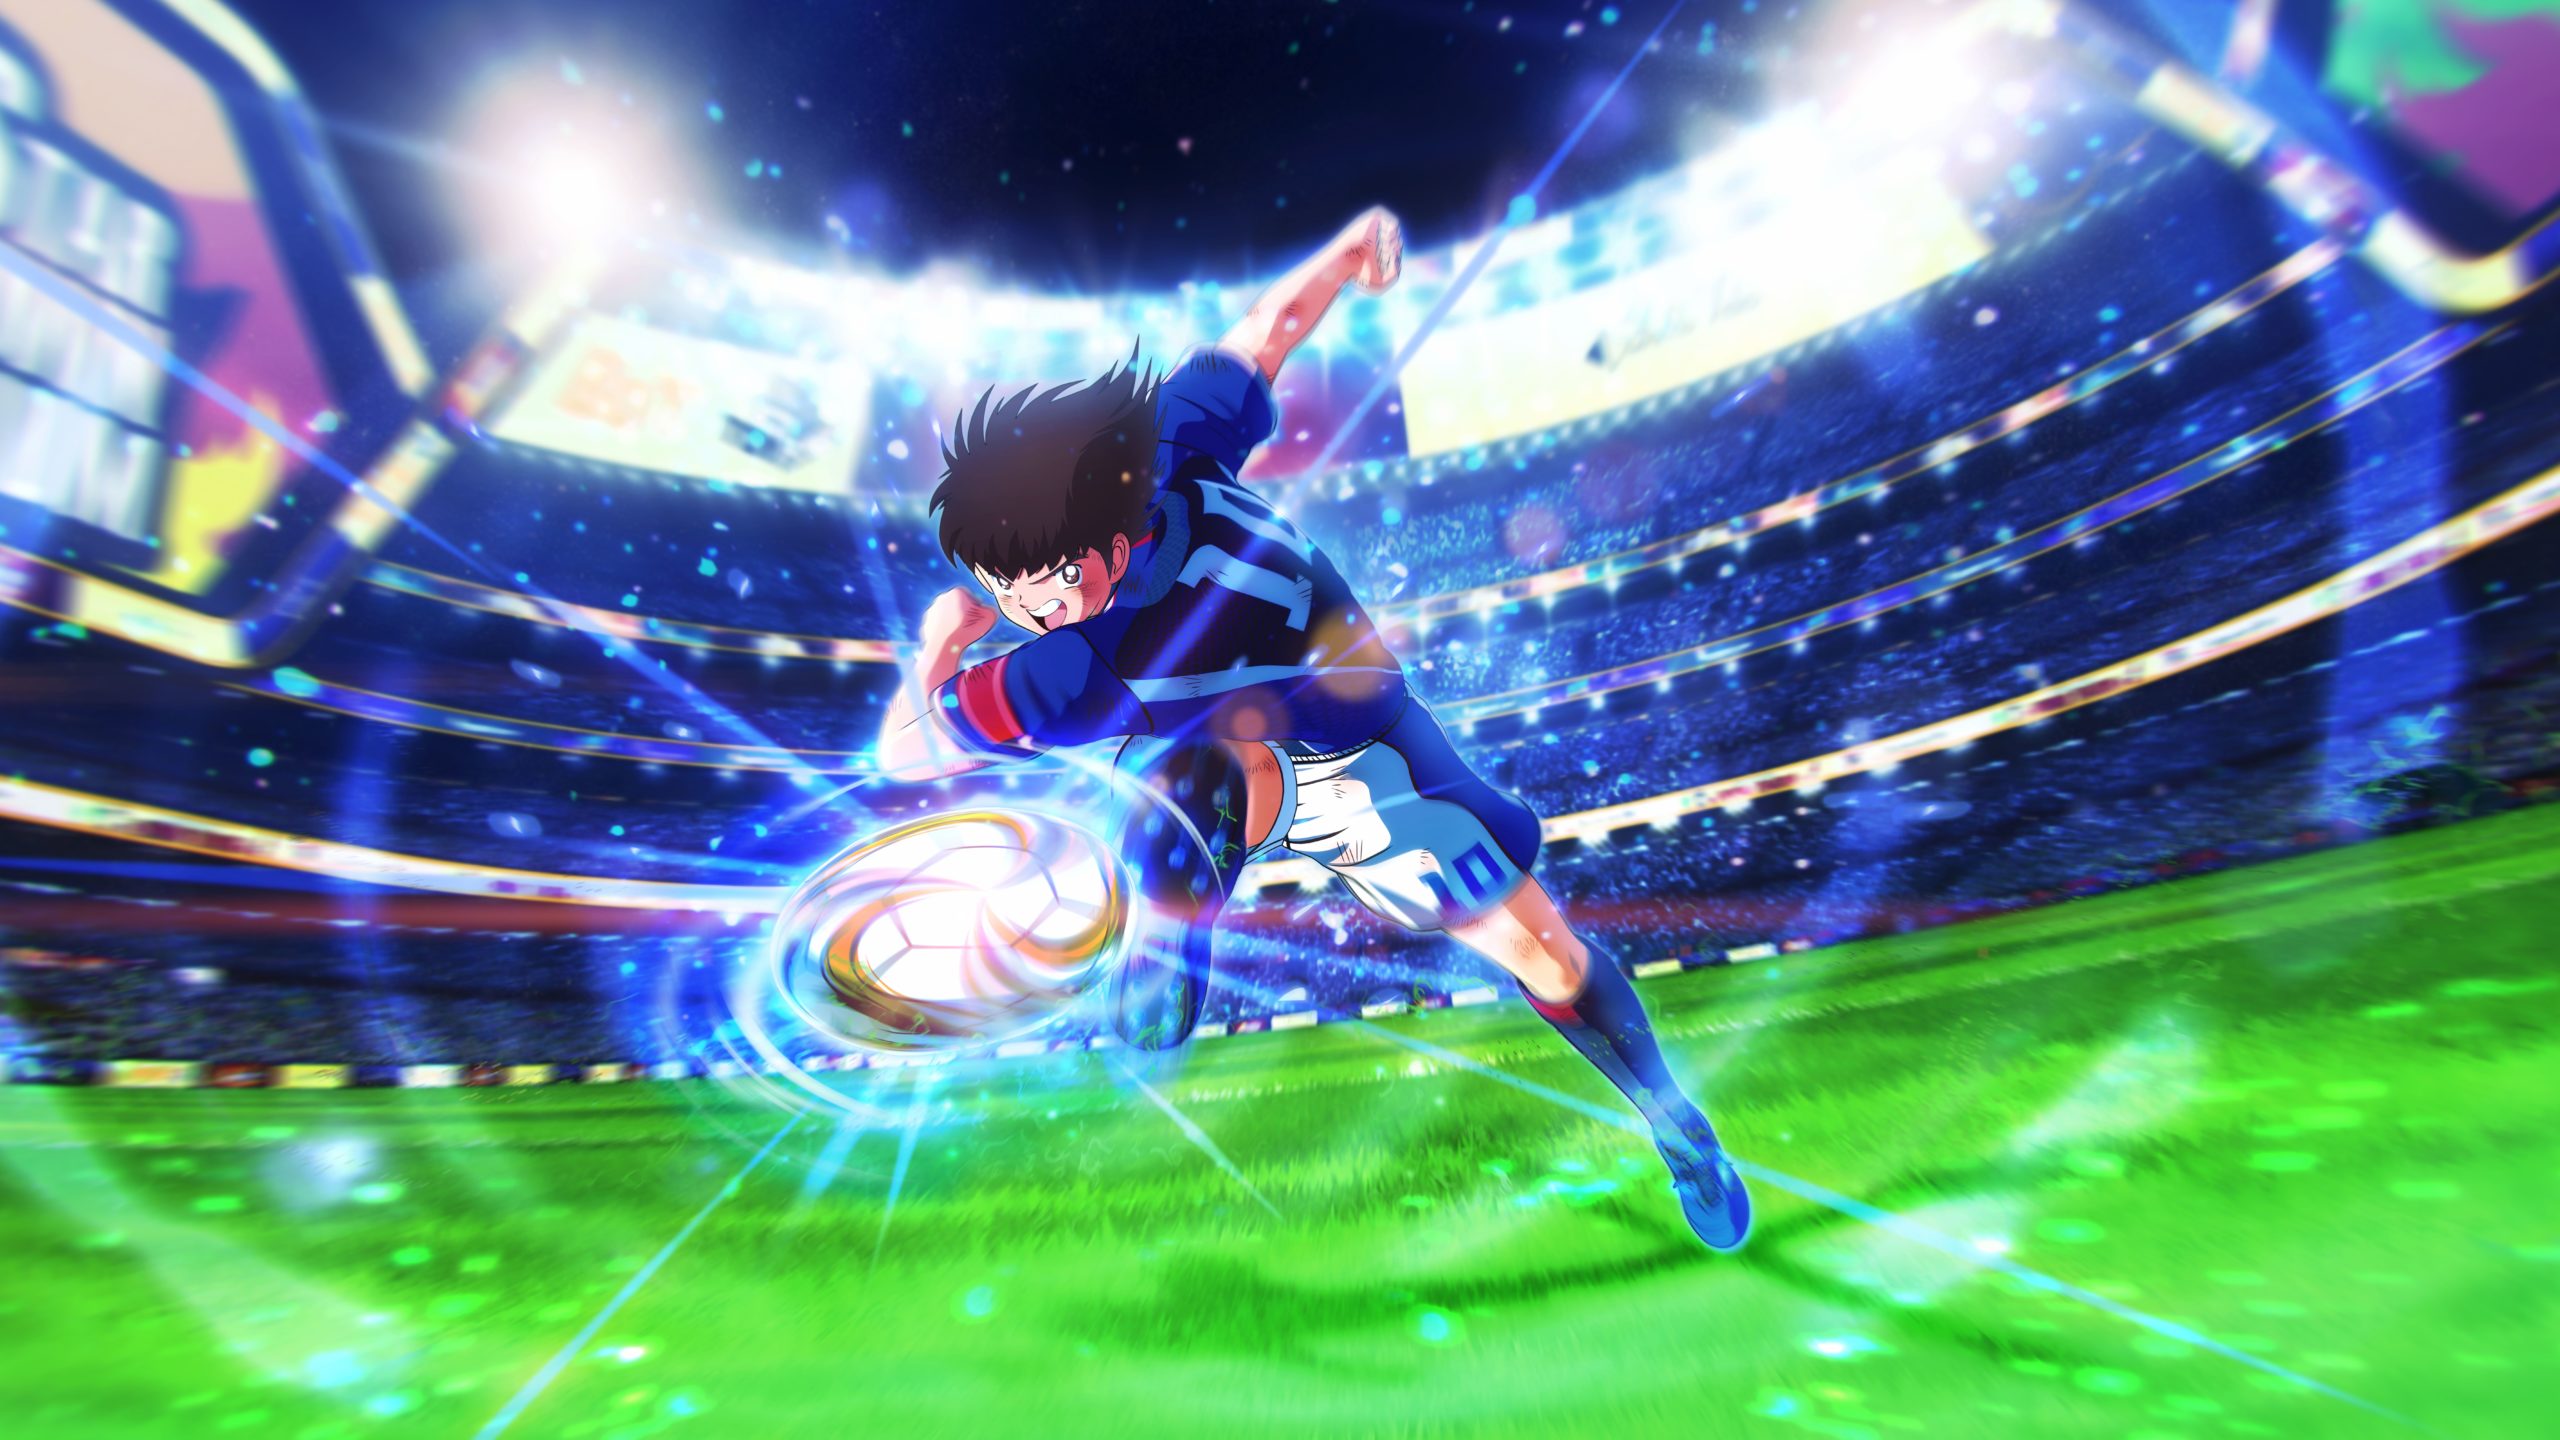 Meilleurs fonds d'écran Captain Tsubasa: Rise Of New Champions pour l'écran du téléphone